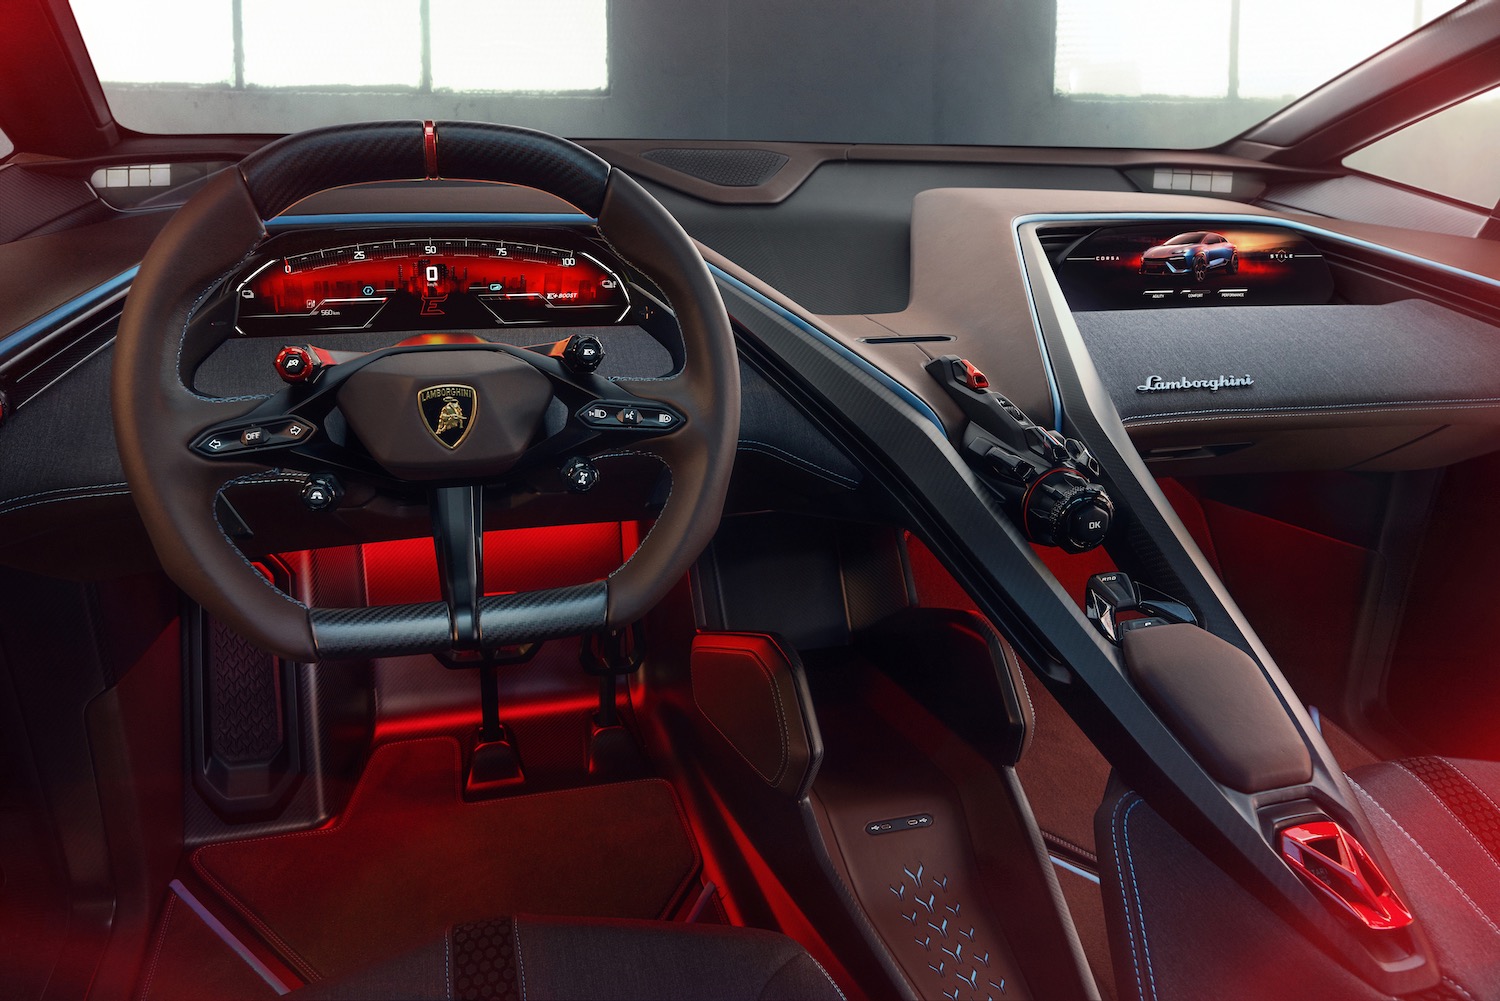 The Lamborghini Lanzador concept's dashboard.